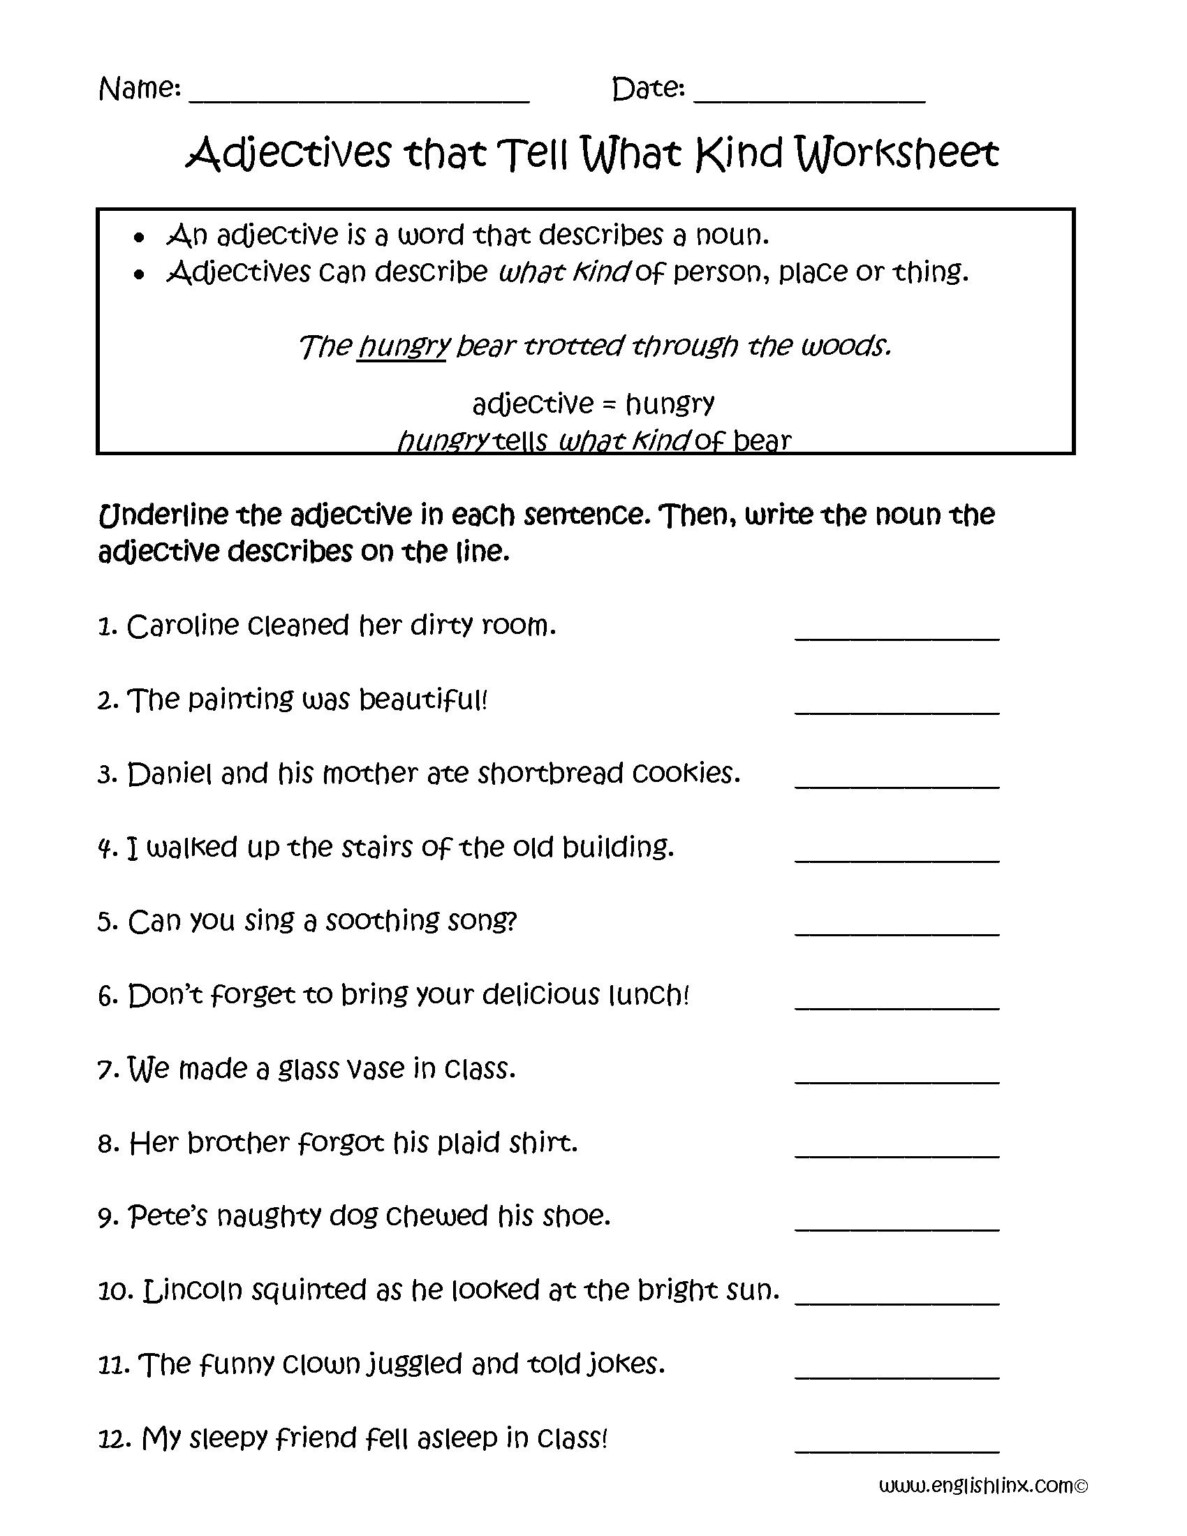 adjective-phrase-worksheet-grade-4-adjectiveworksheets